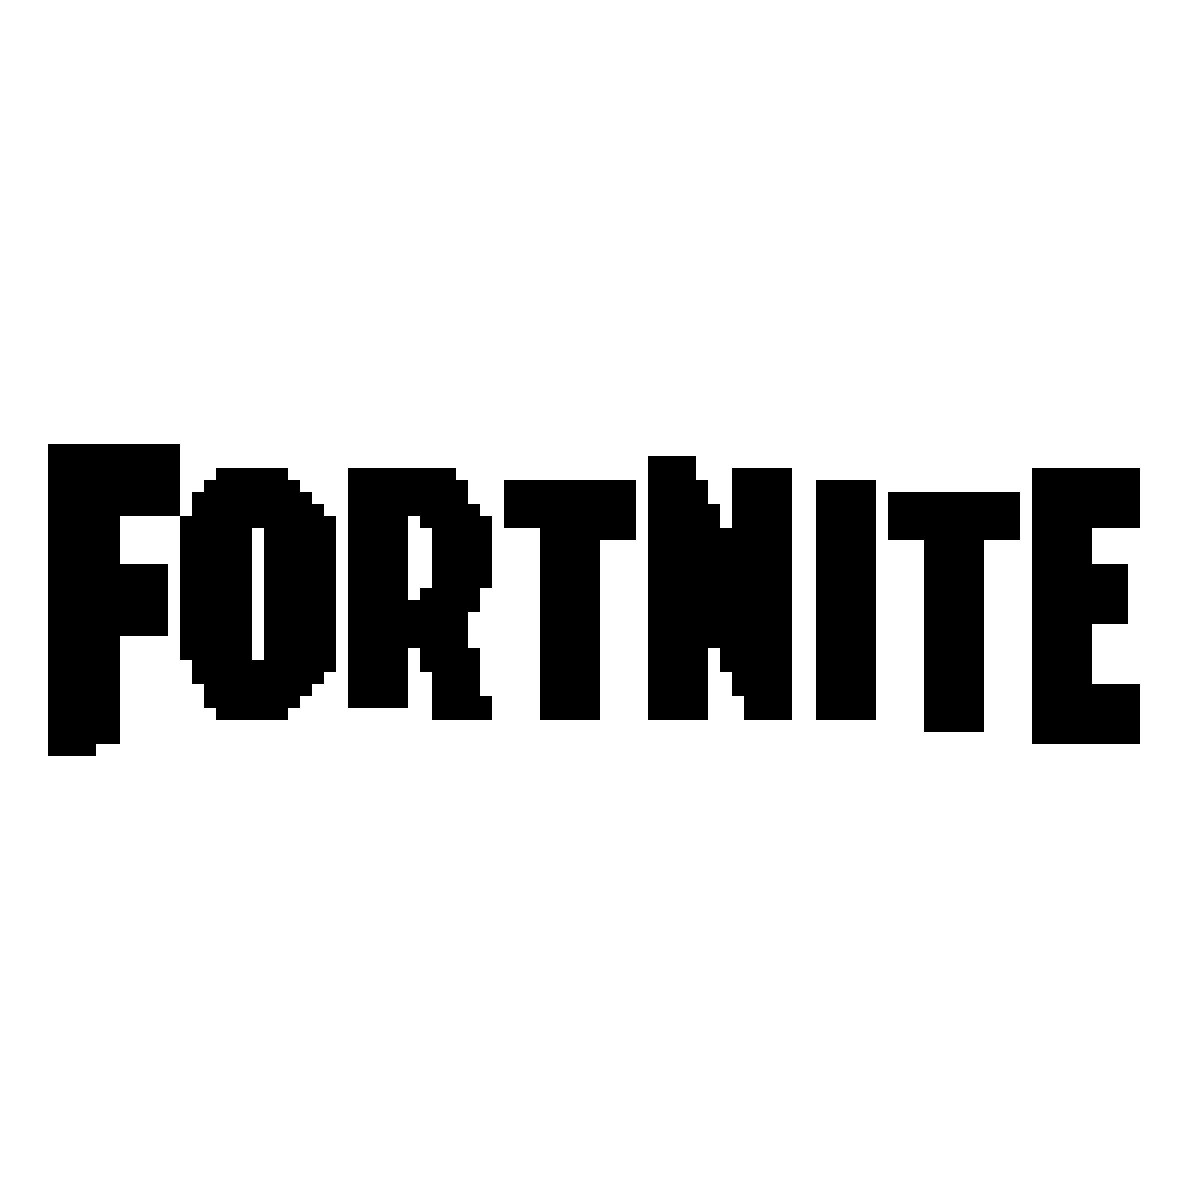 「Fortnite」ロゴ